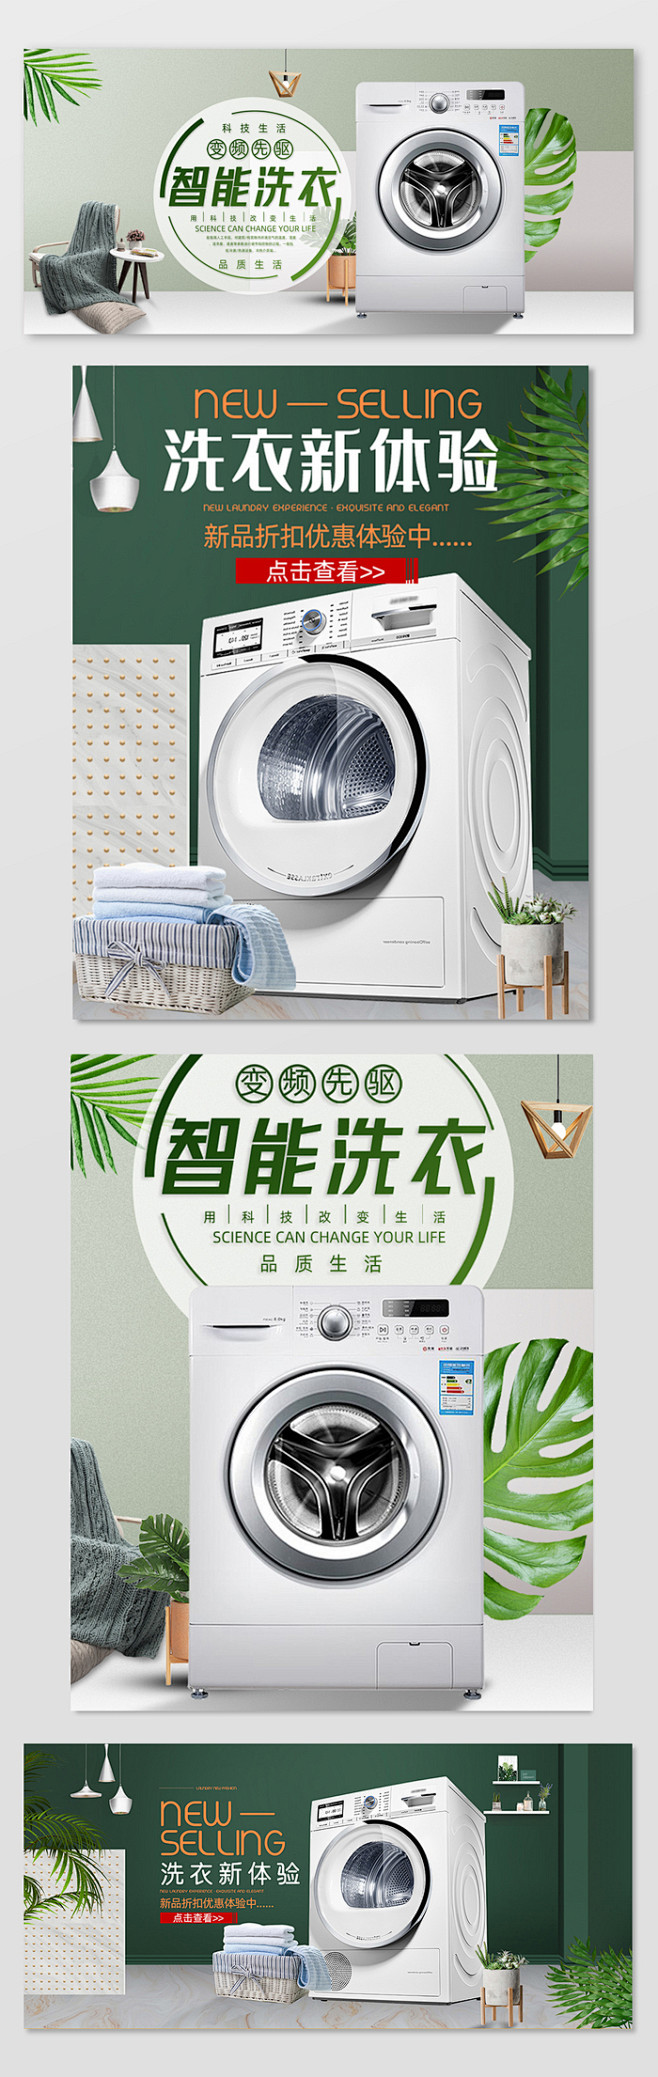 简约时尚小清新数码家电洗衣机淘宝天猫海报